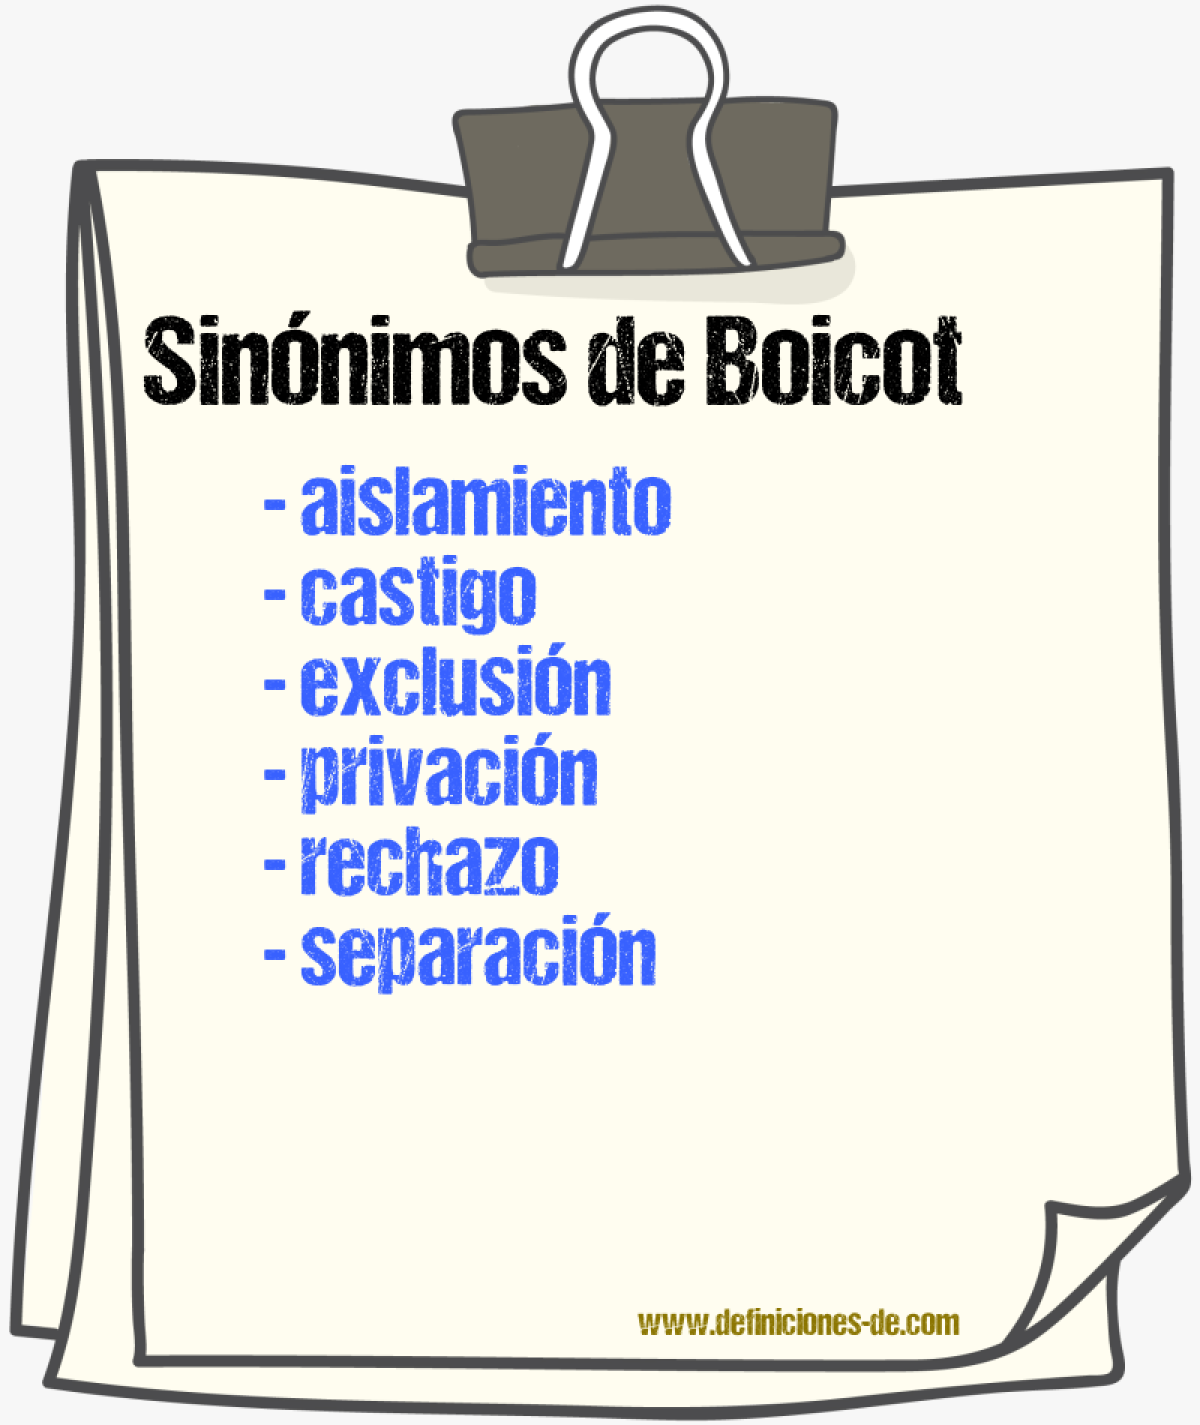 Sinónimos de boicot